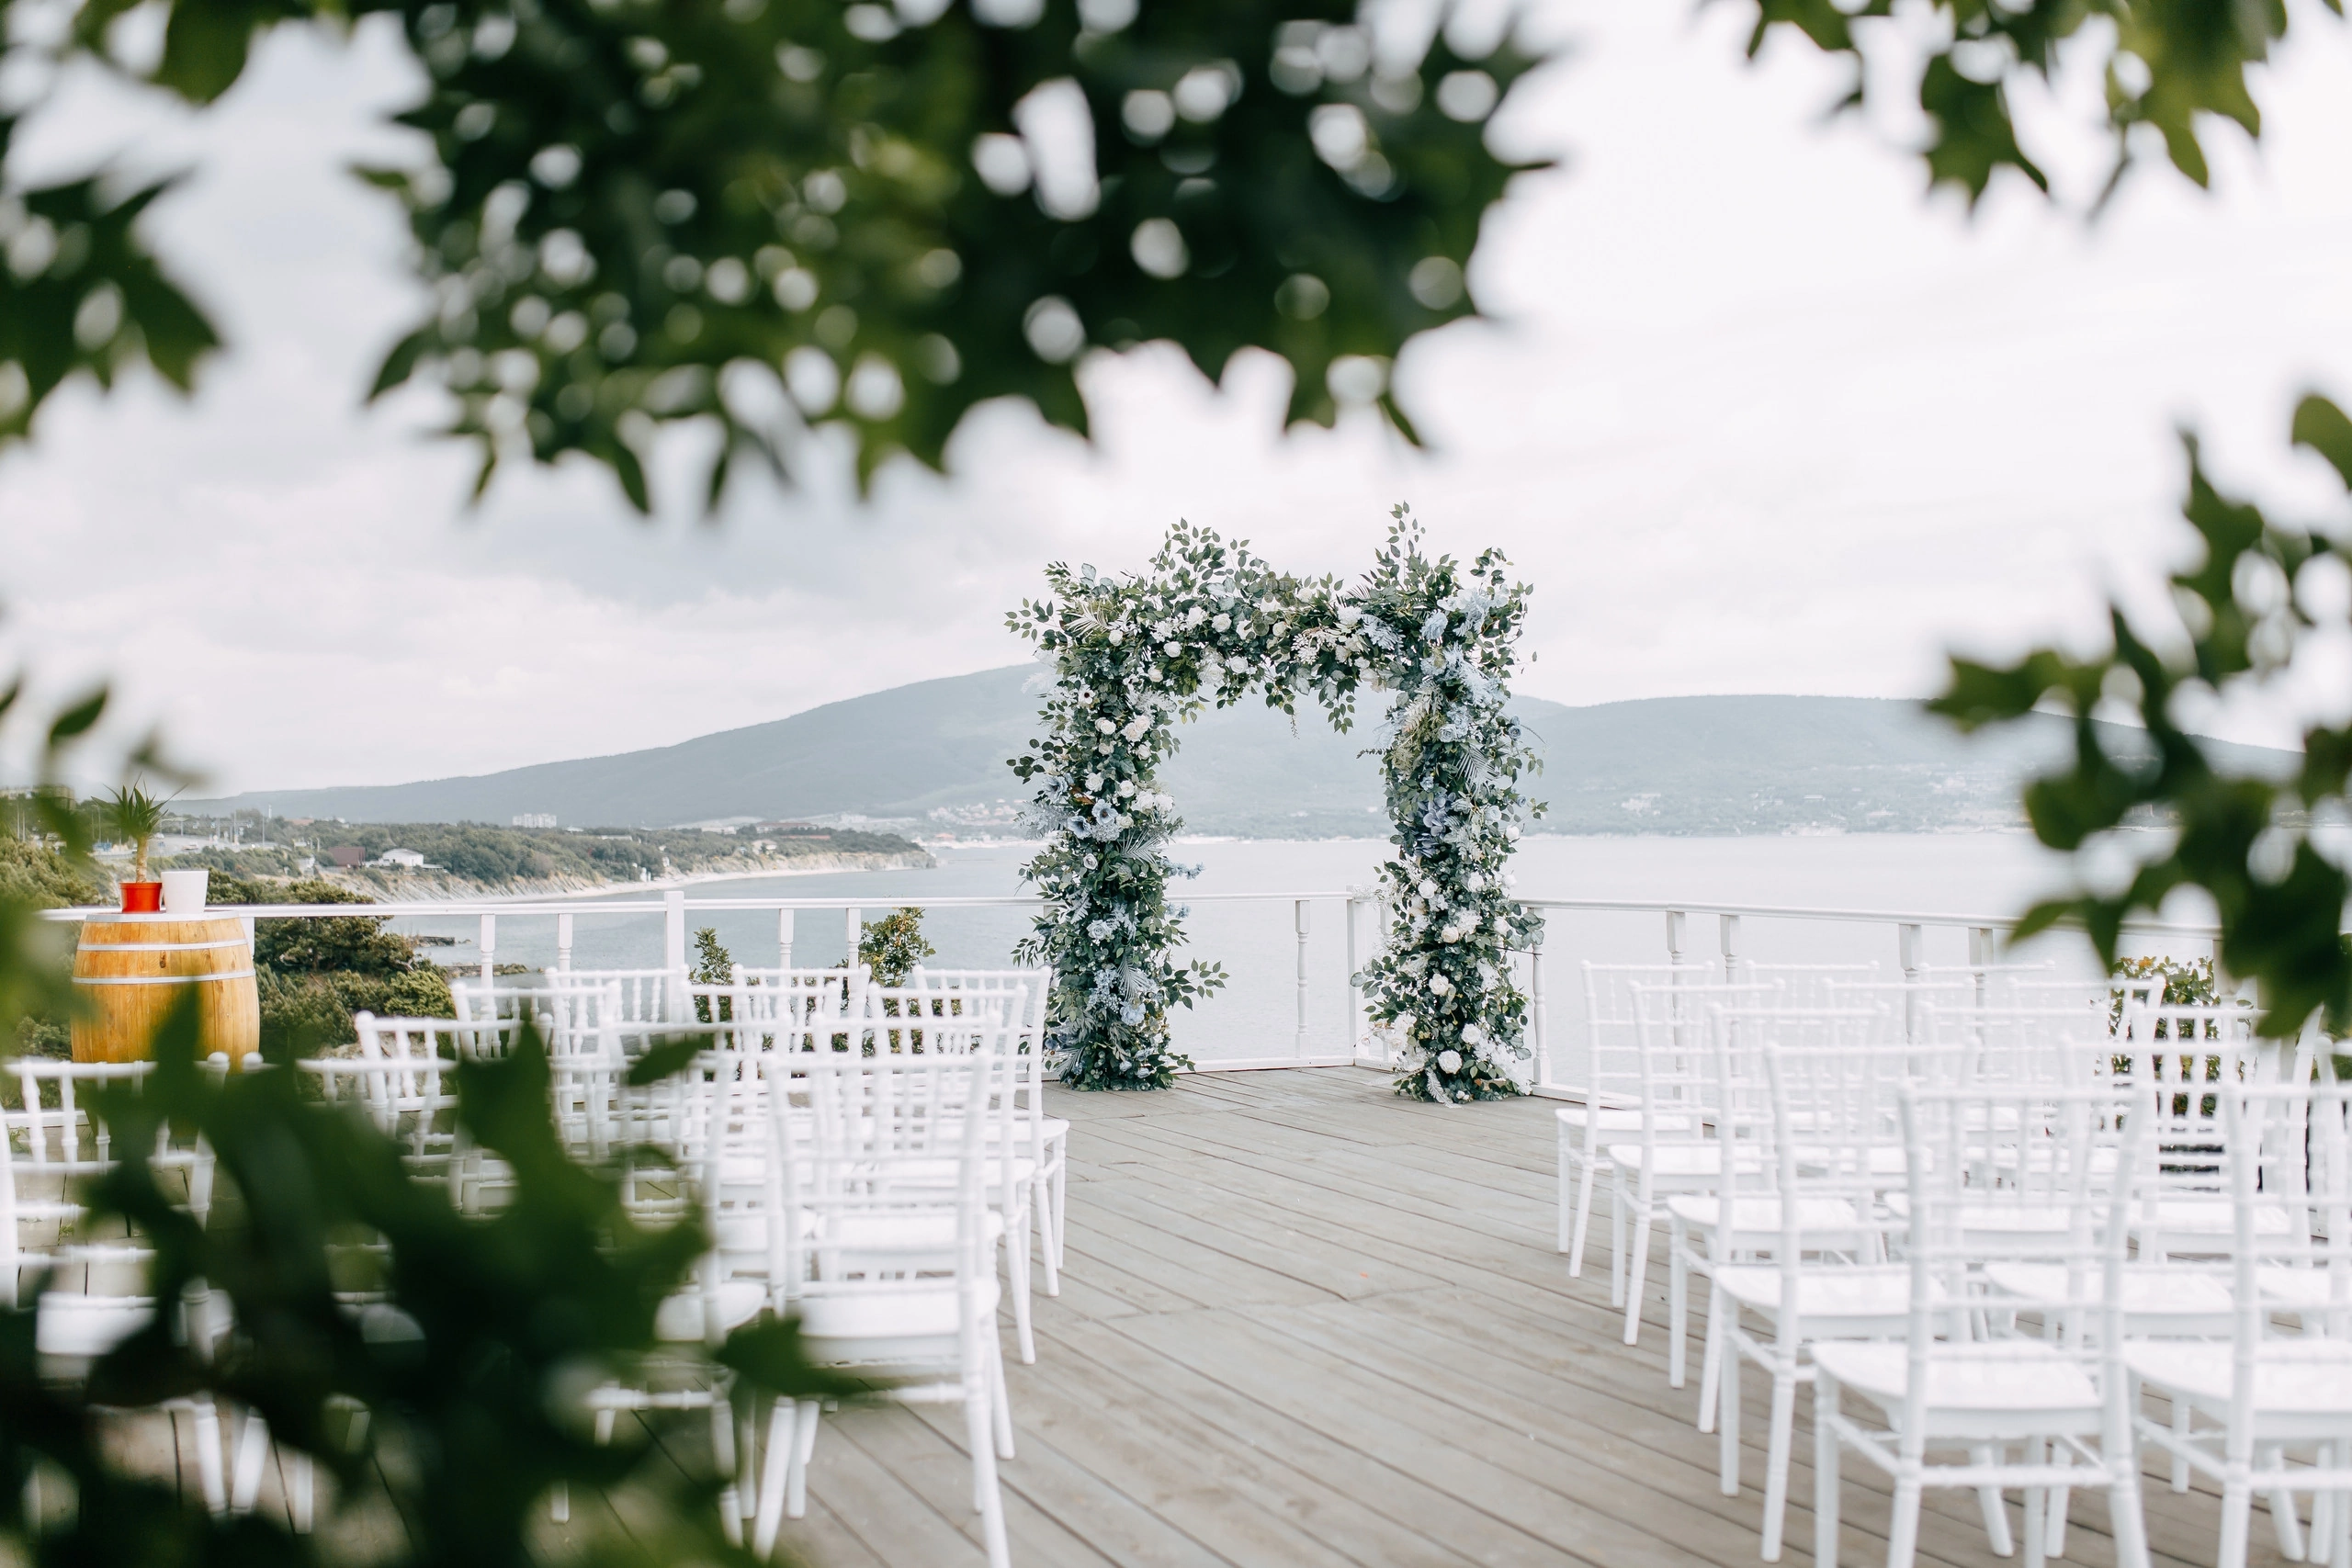 Свадьба на море: воплощай мечту вместе с командой «Дома у Моря»